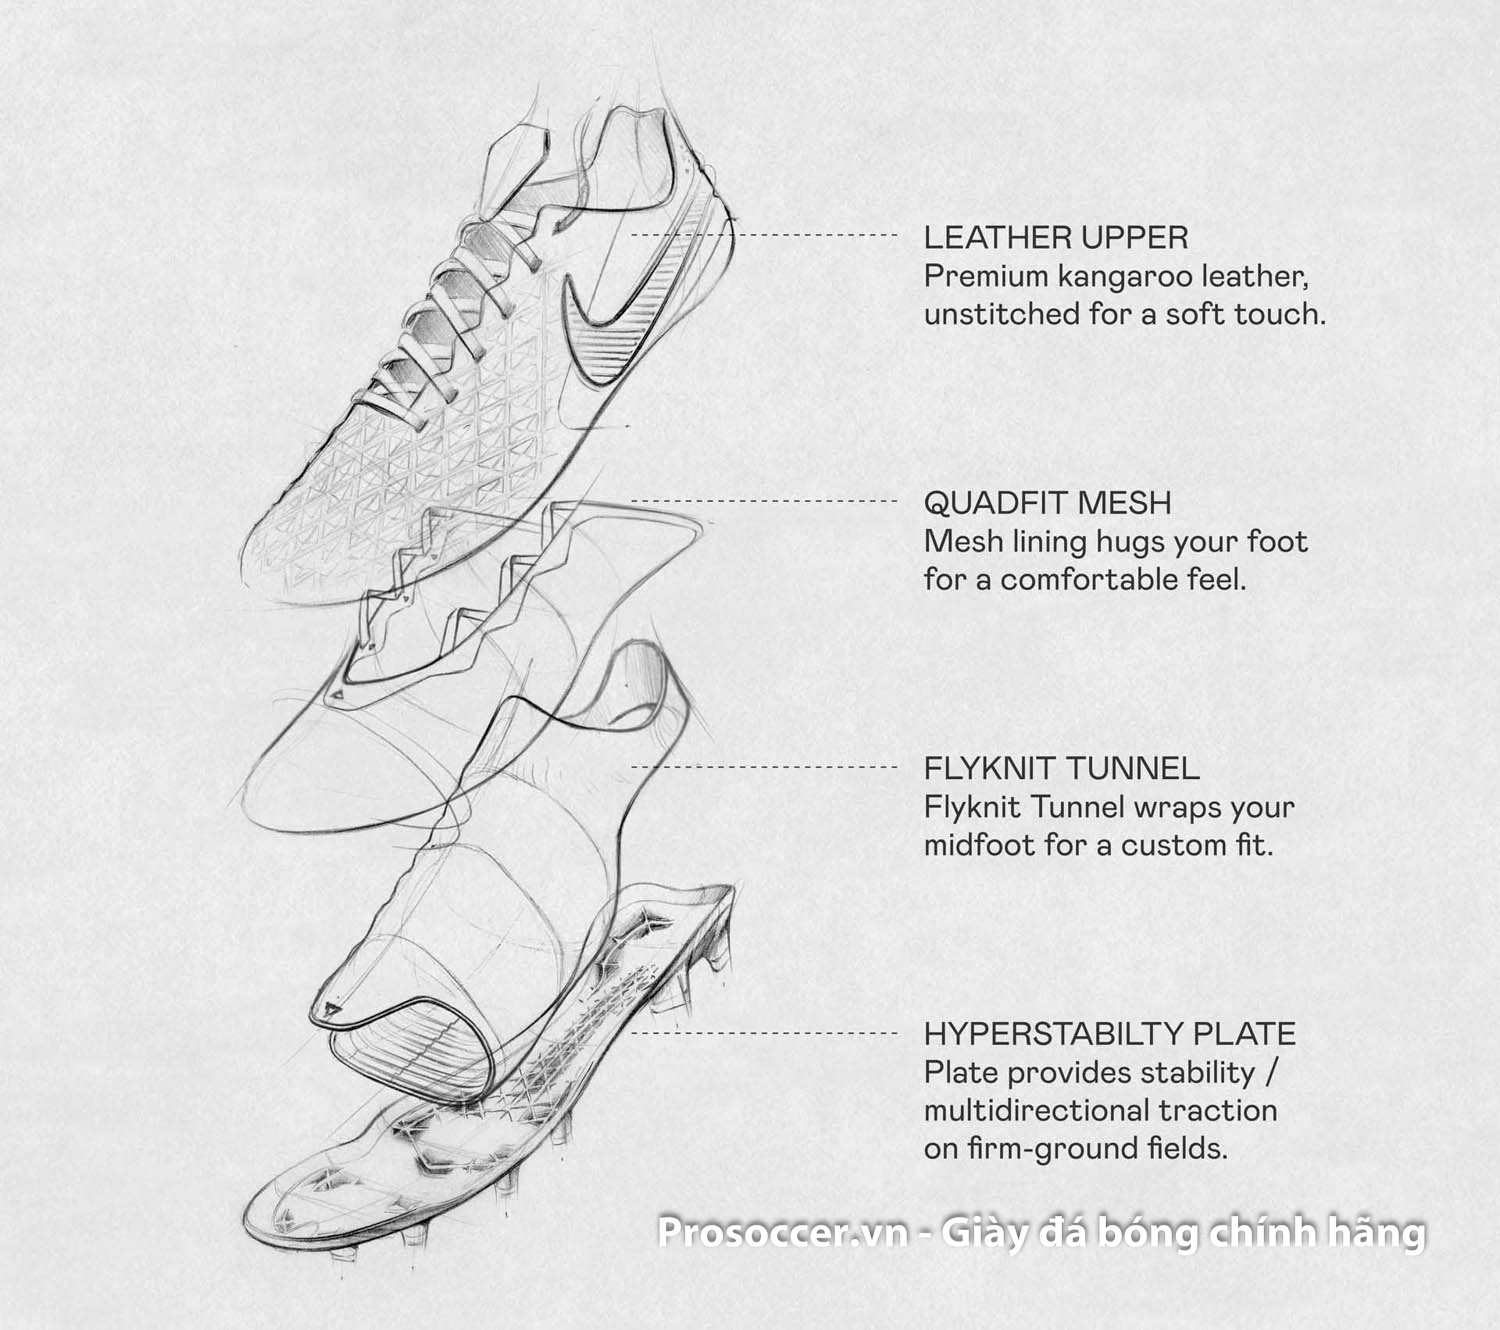 Tự tin với chiếc giày bóng đá Nike Tiempo Legend 8 Elite FG. Với kiểu dáng đẹp mắt và chất liệu cao cấp, chiếc giày này sẽ giúp bạn chơi bóng một cách dễ dàng và hiệu quả hơn. Cùng khám phá thêm nhiều đặc điểm nổi bật của sản phẩm bằng cách nhấp vào hình ảnh bên dưới.